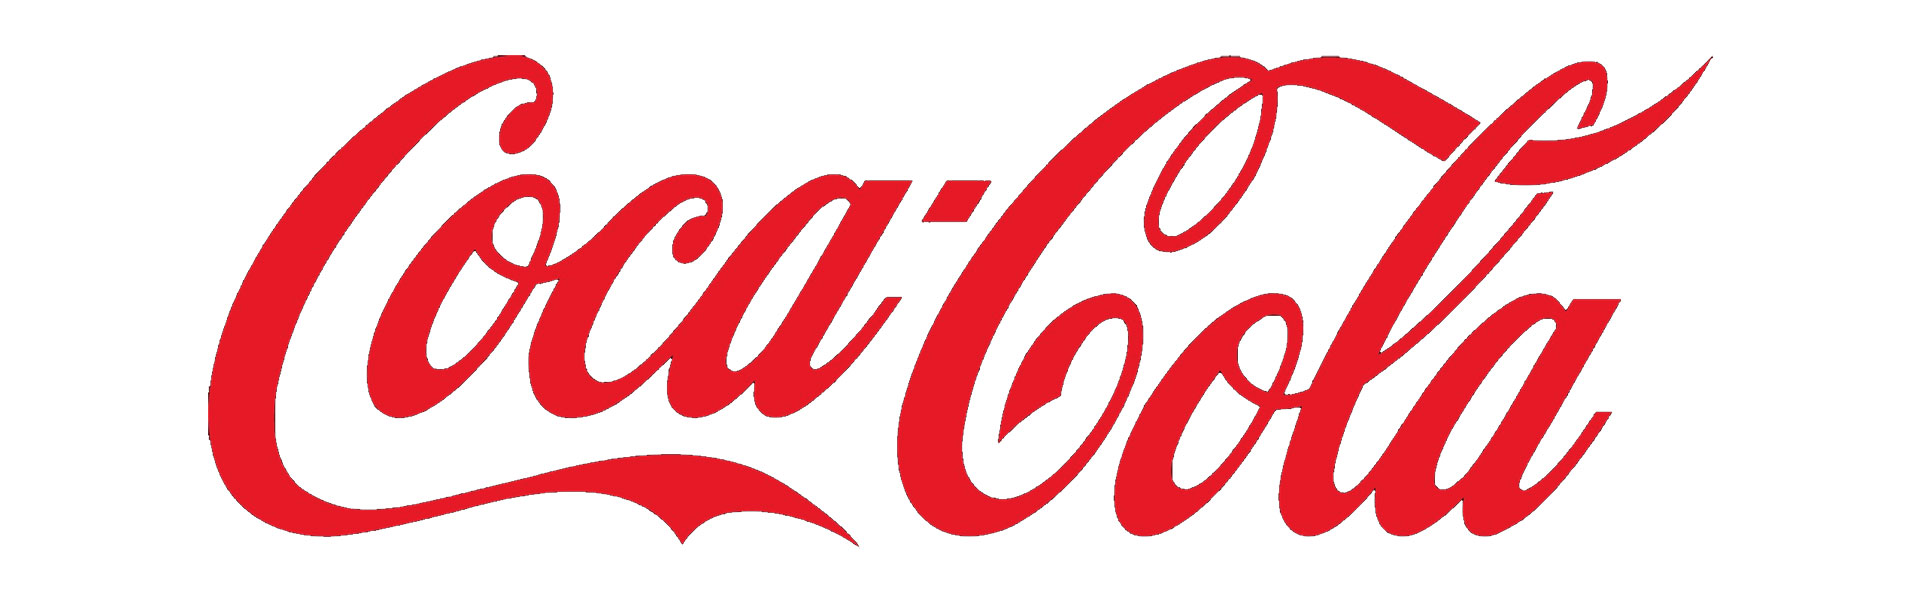 Typographie Coca Cola